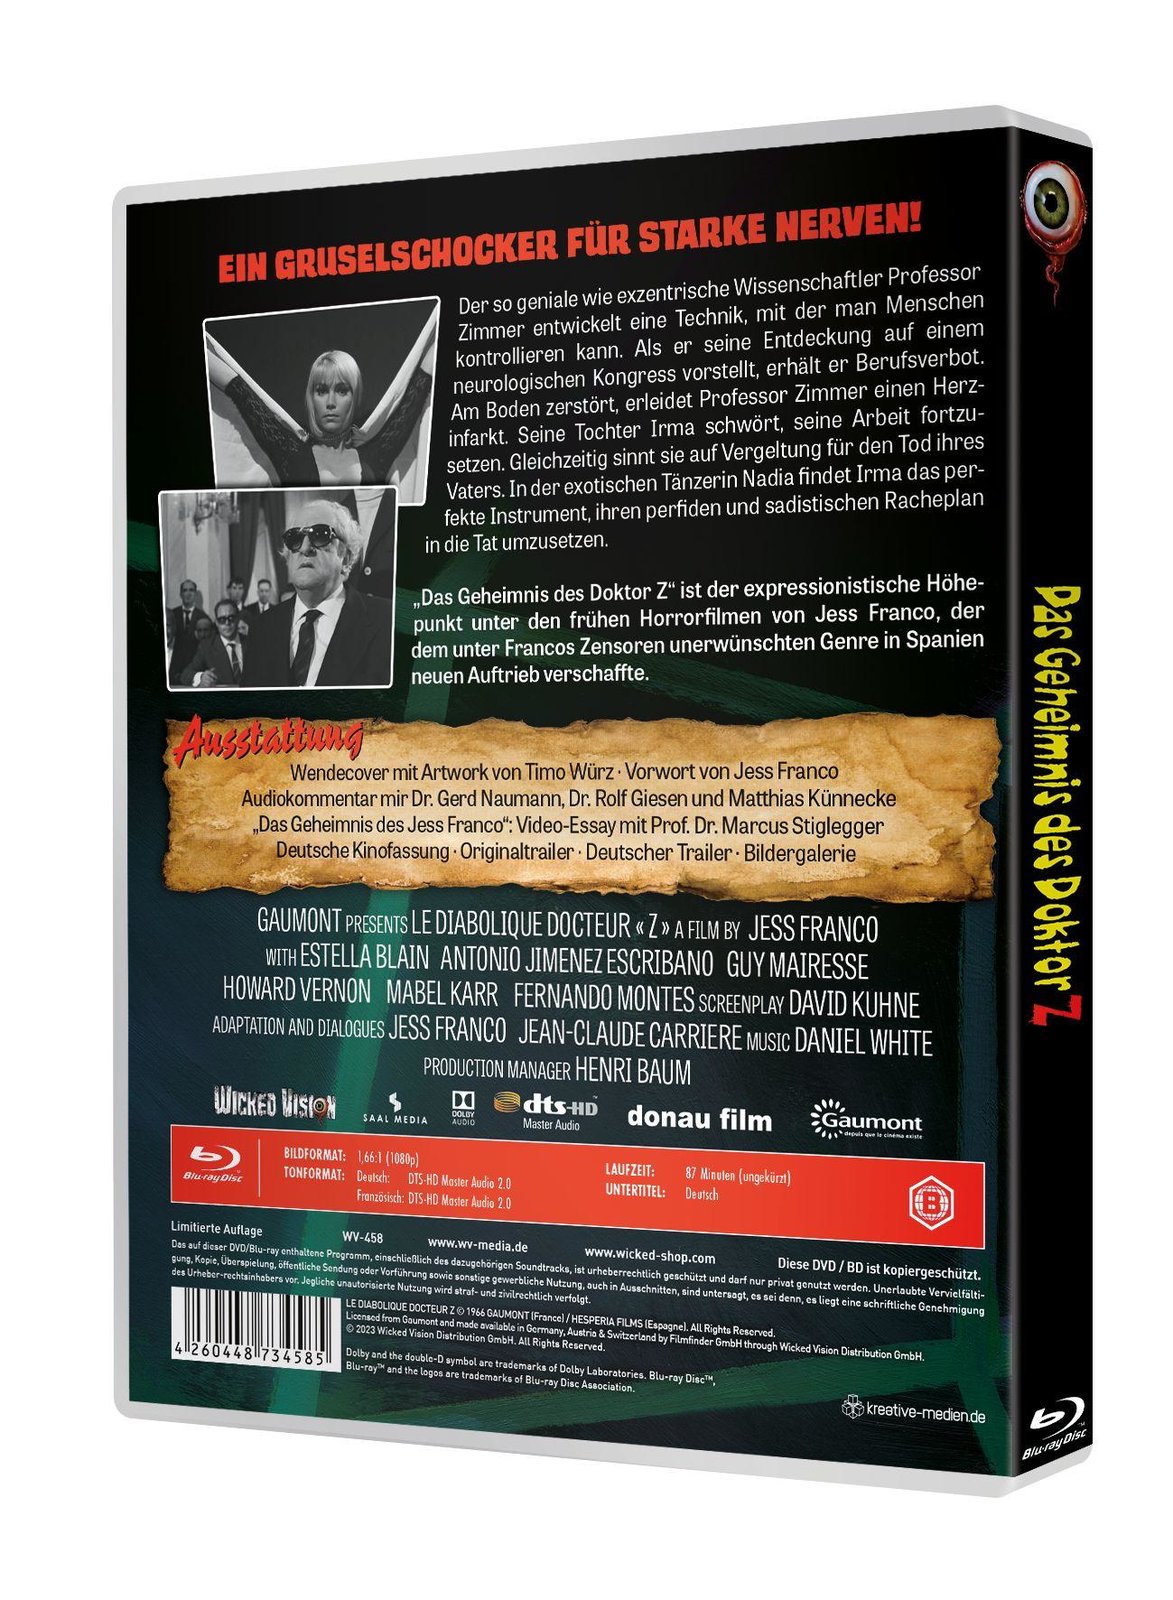 Das Geheimnis des Doktor Z - Uncut Edition  (Blu-ray Disc)